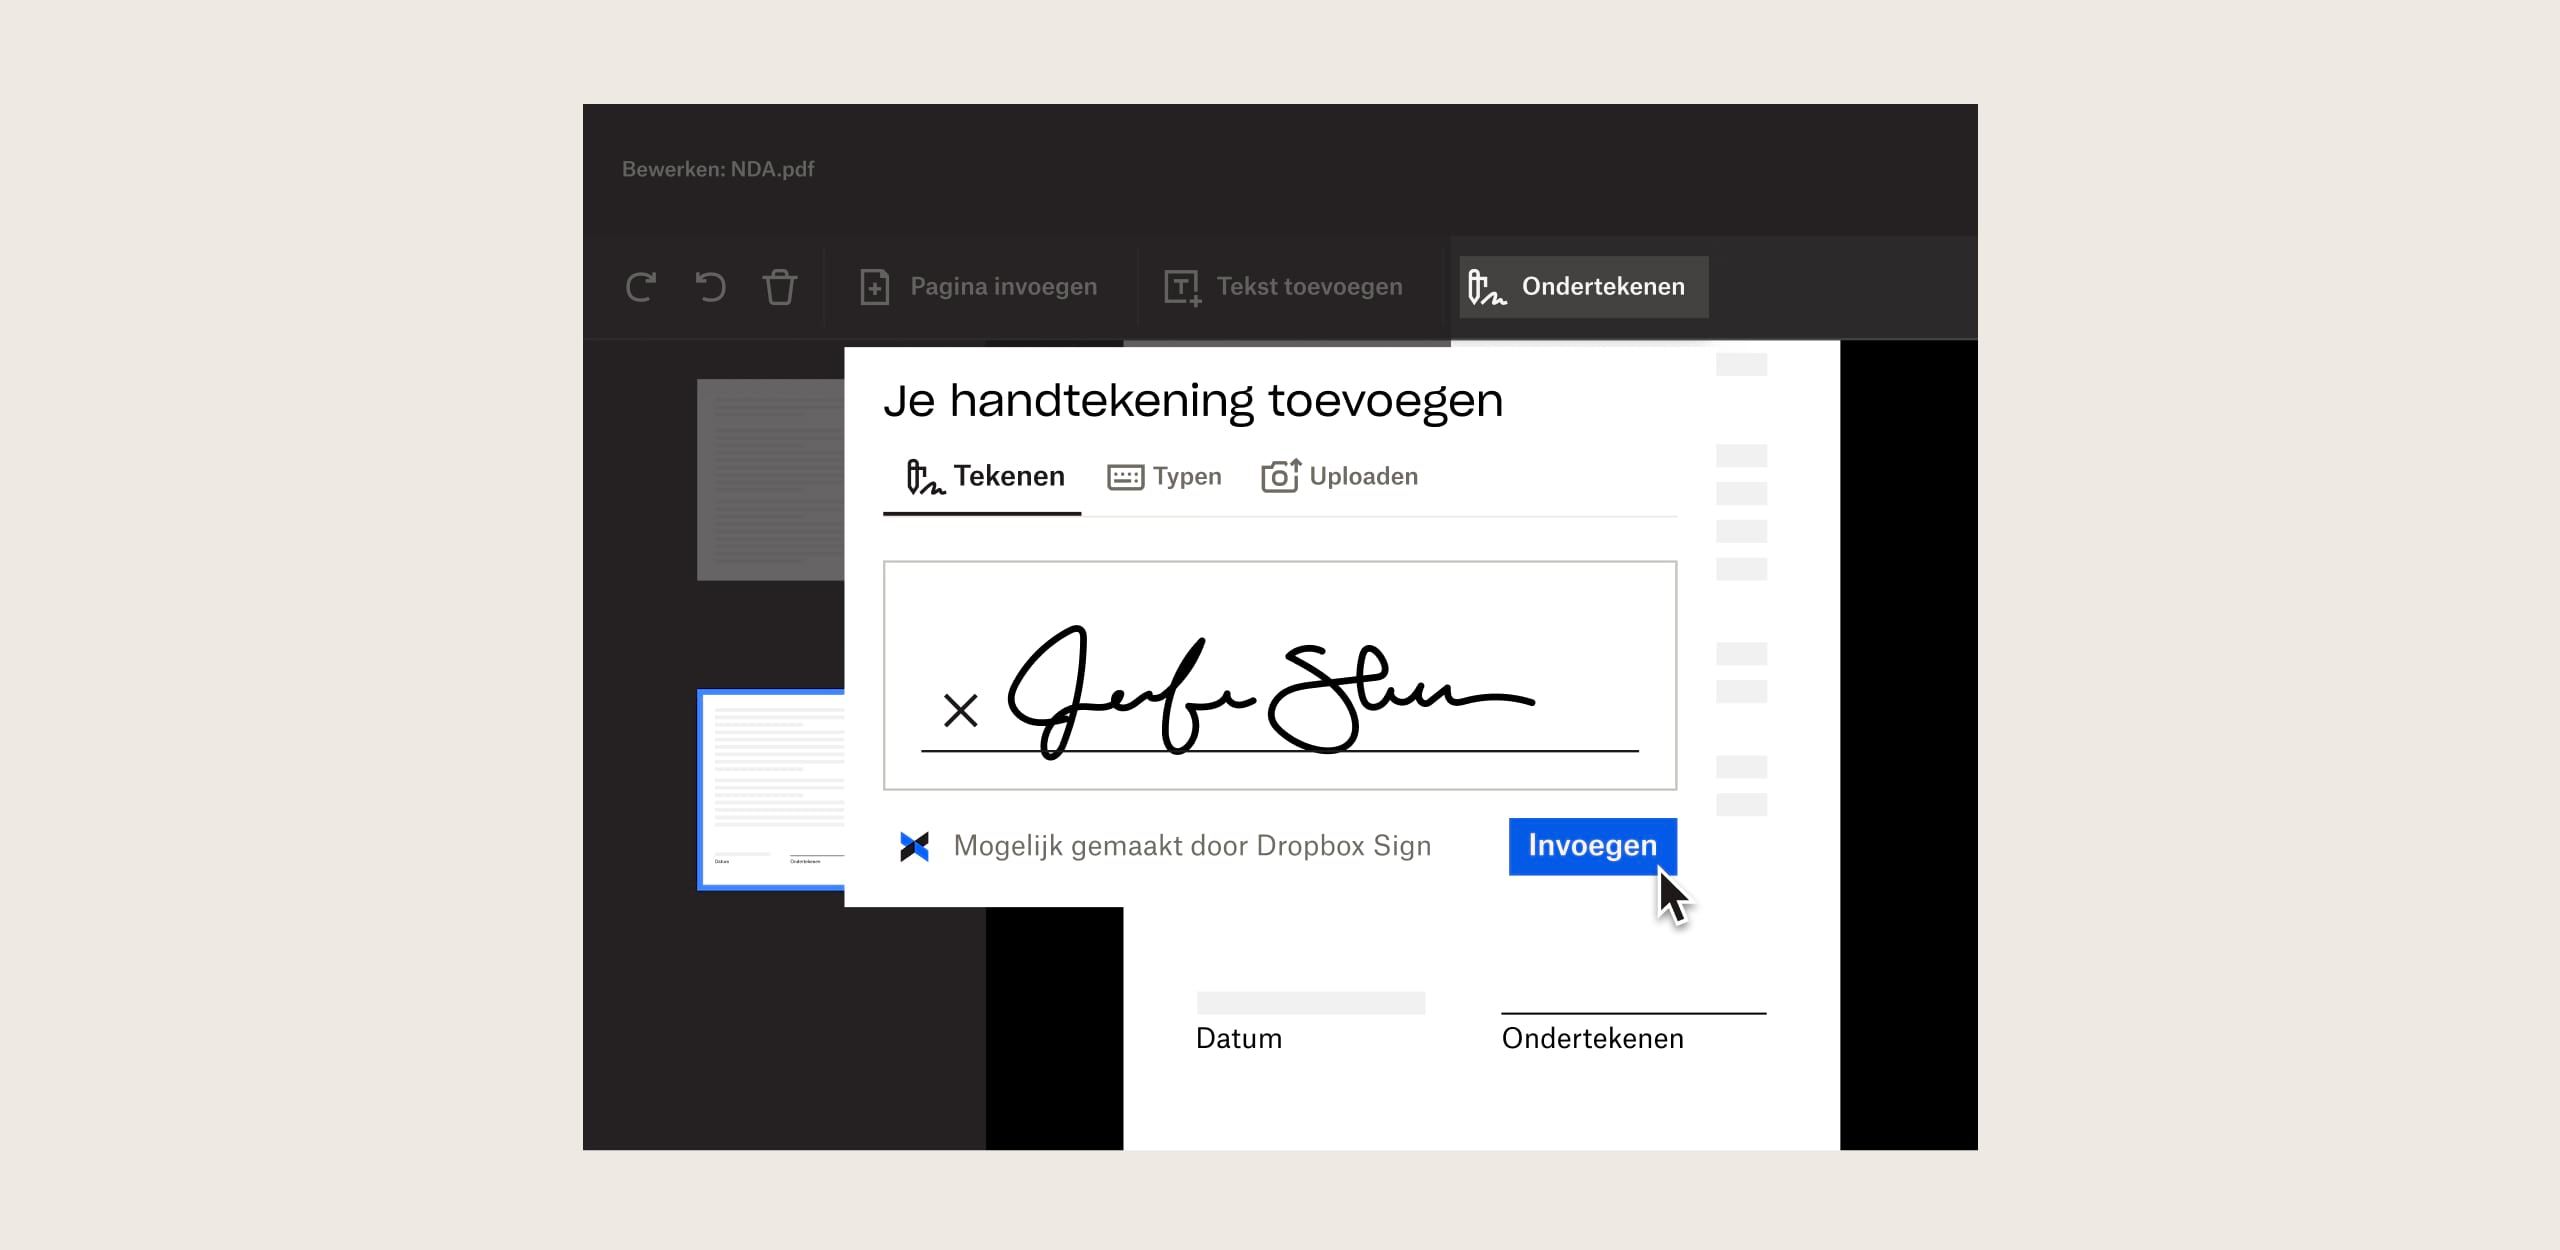 Een persoon plaatst een handtekening in een document met Dropbox Sign